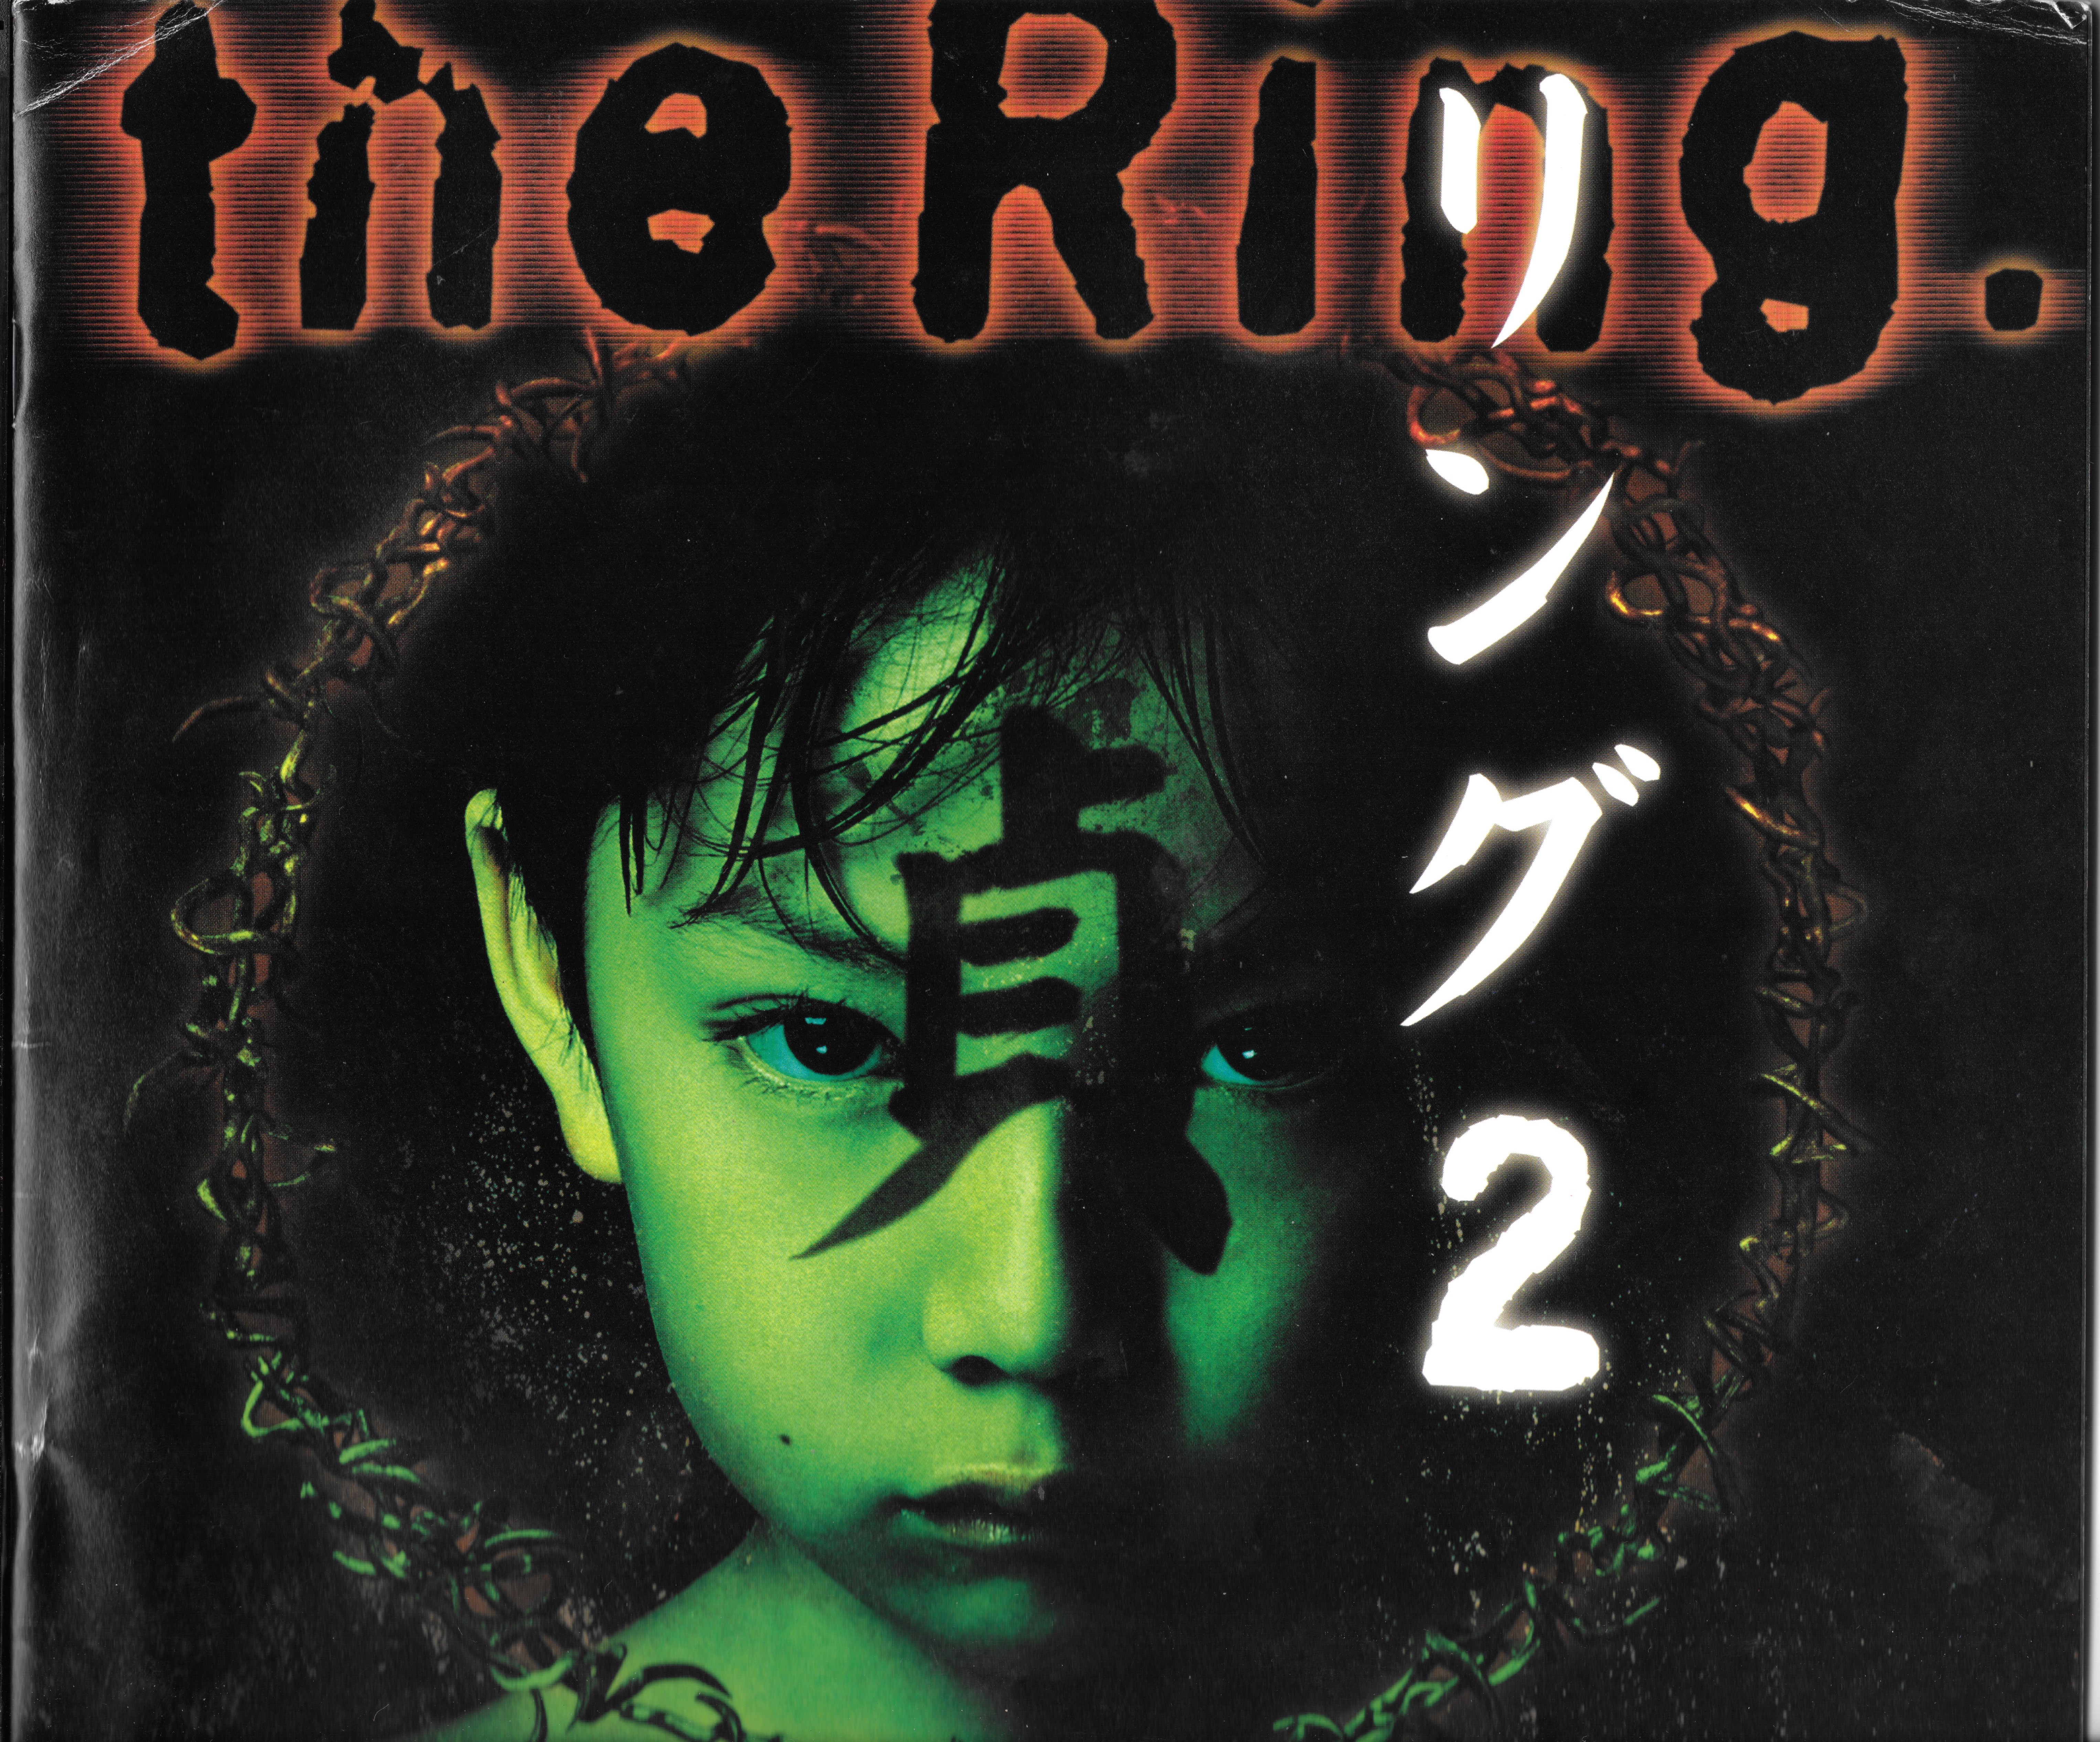 The Ring 2- DVD 883929313891 | eBay